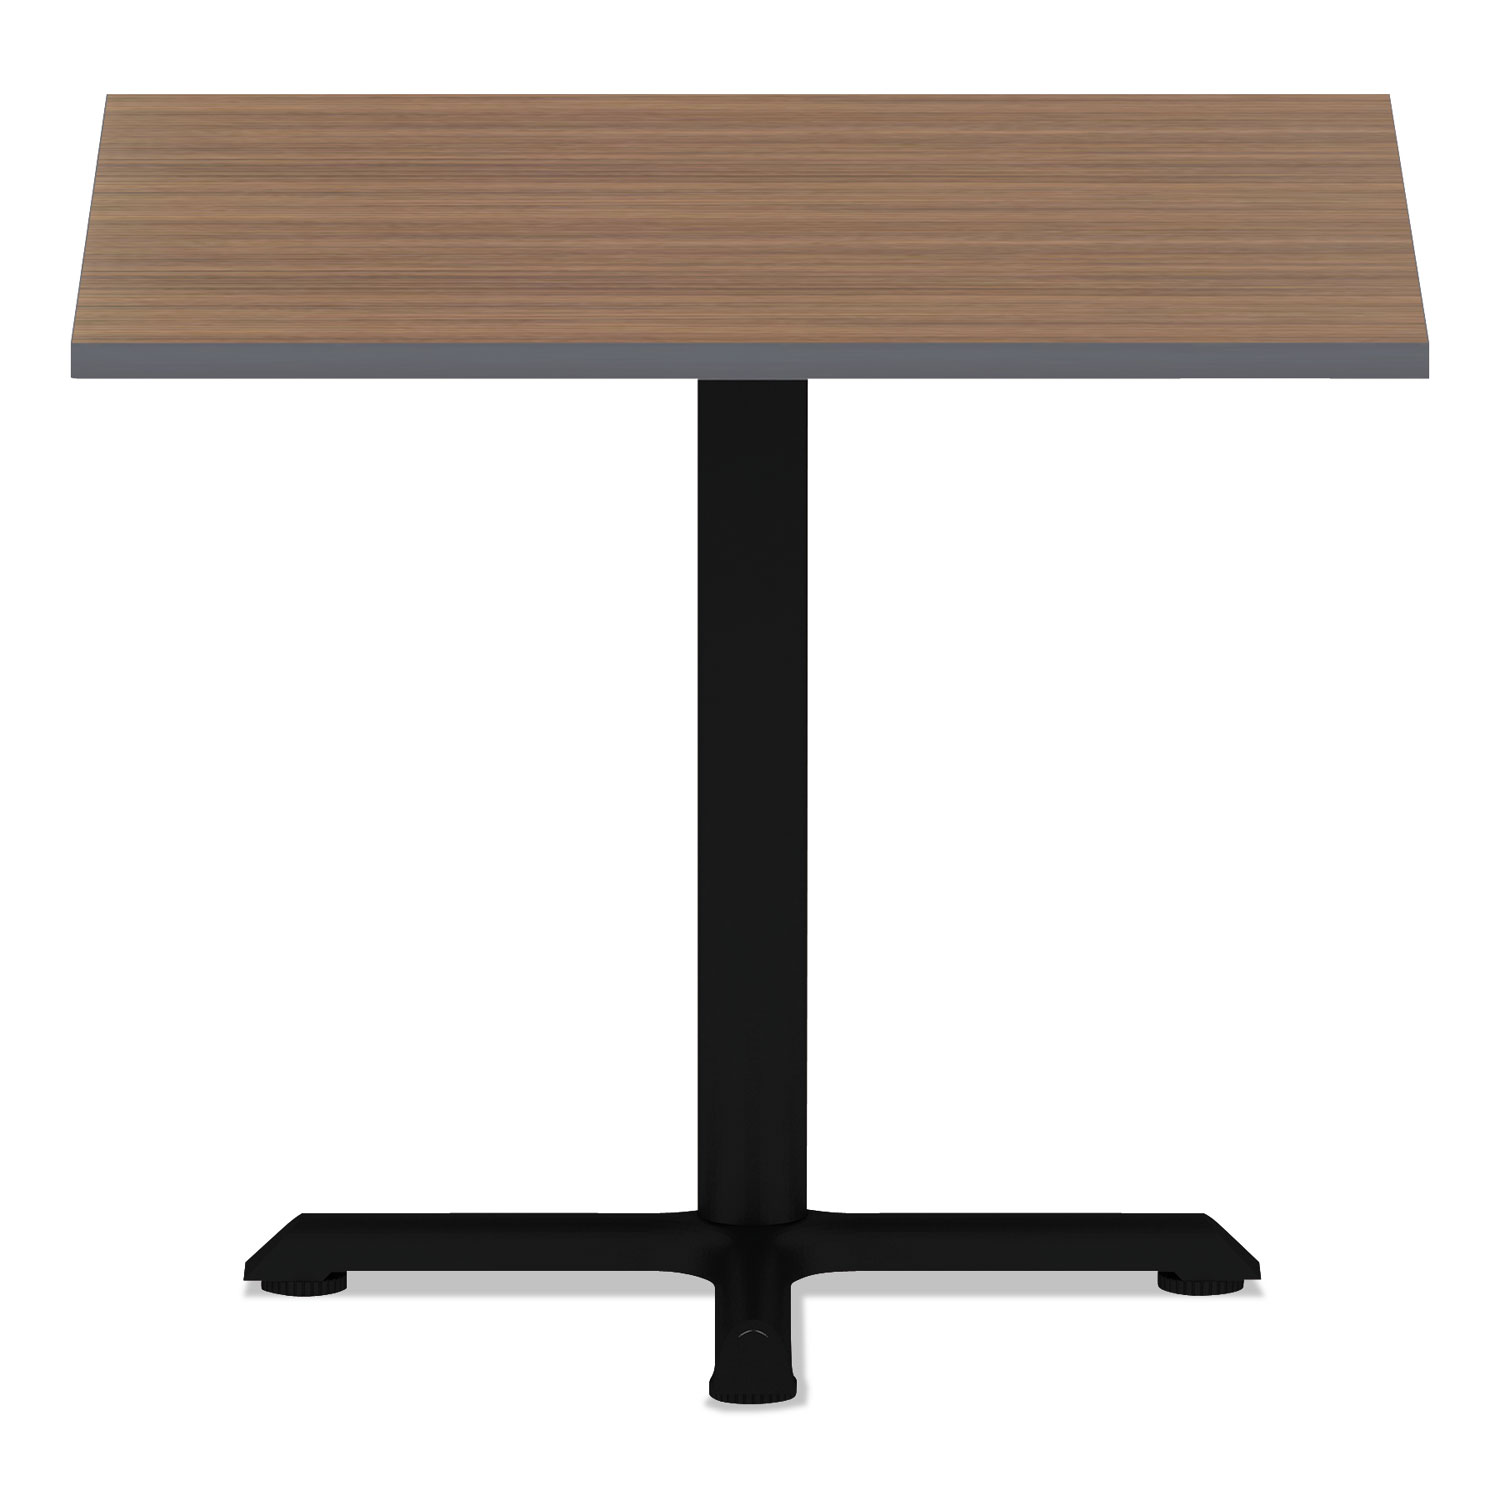  Alera ALETTSQ36EW Reversible Laminate Table Top, Square, 35 3/8w x 35 3/8d, Espresso/Walnut (ALETTSQ36EW) 